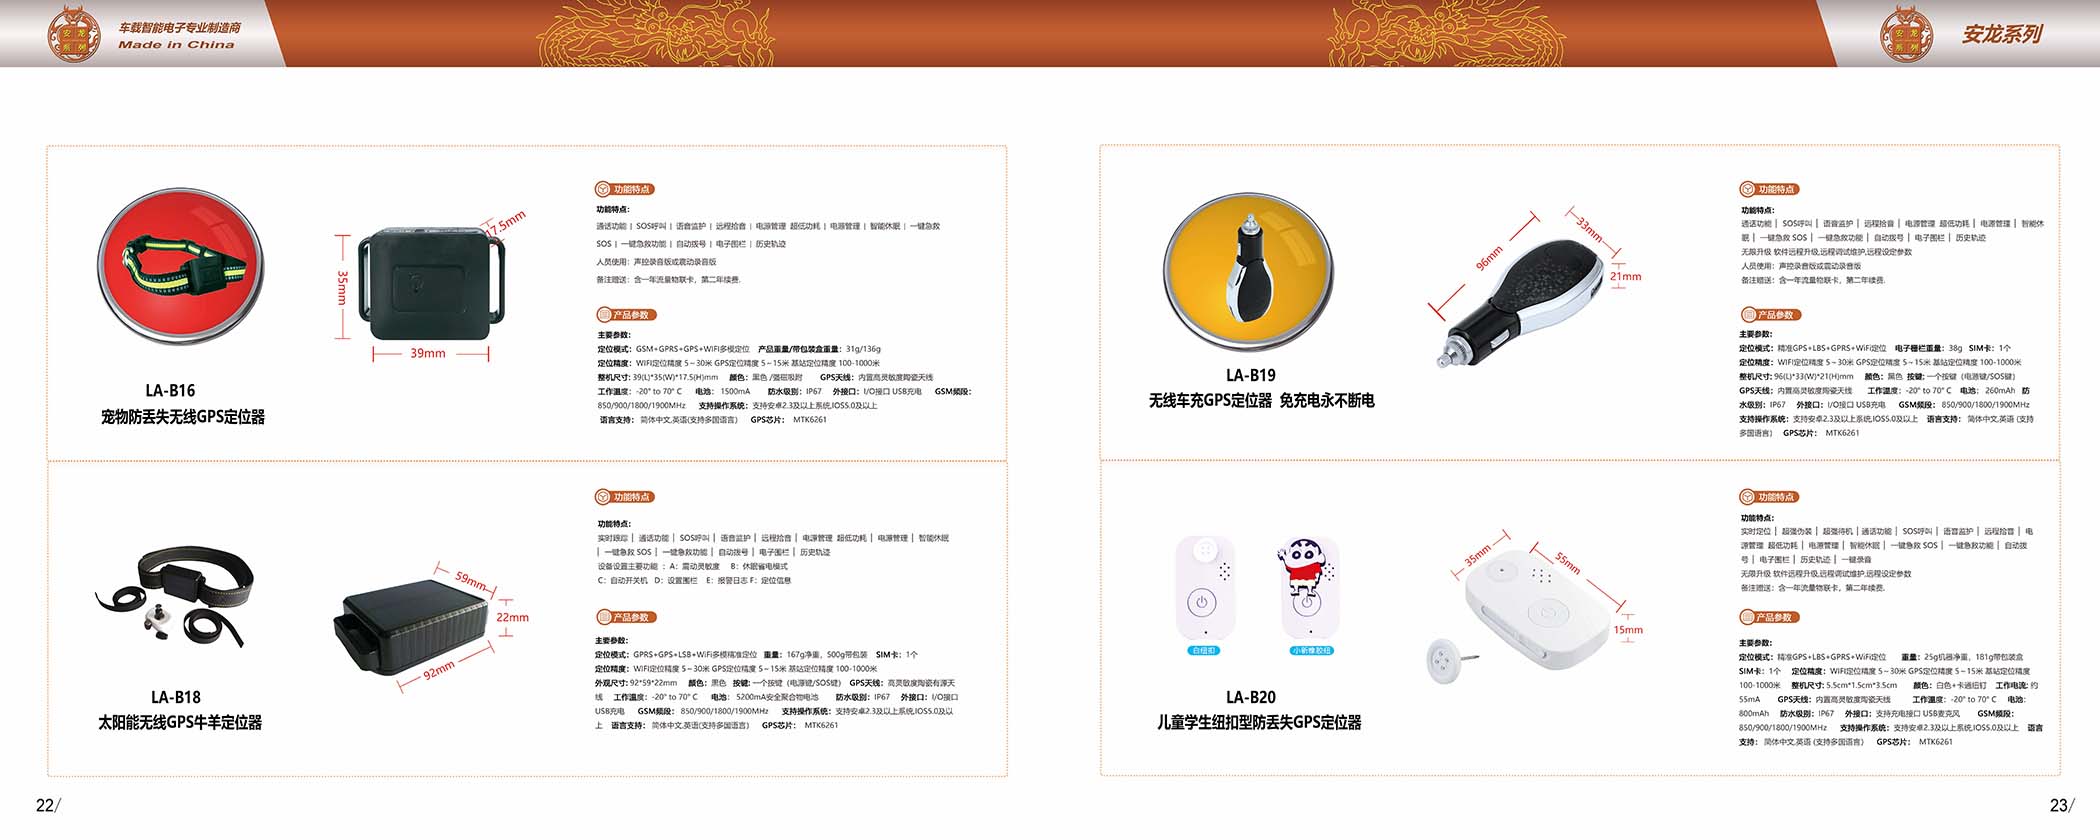 龙安天下电子-产品宣传画册(图9)